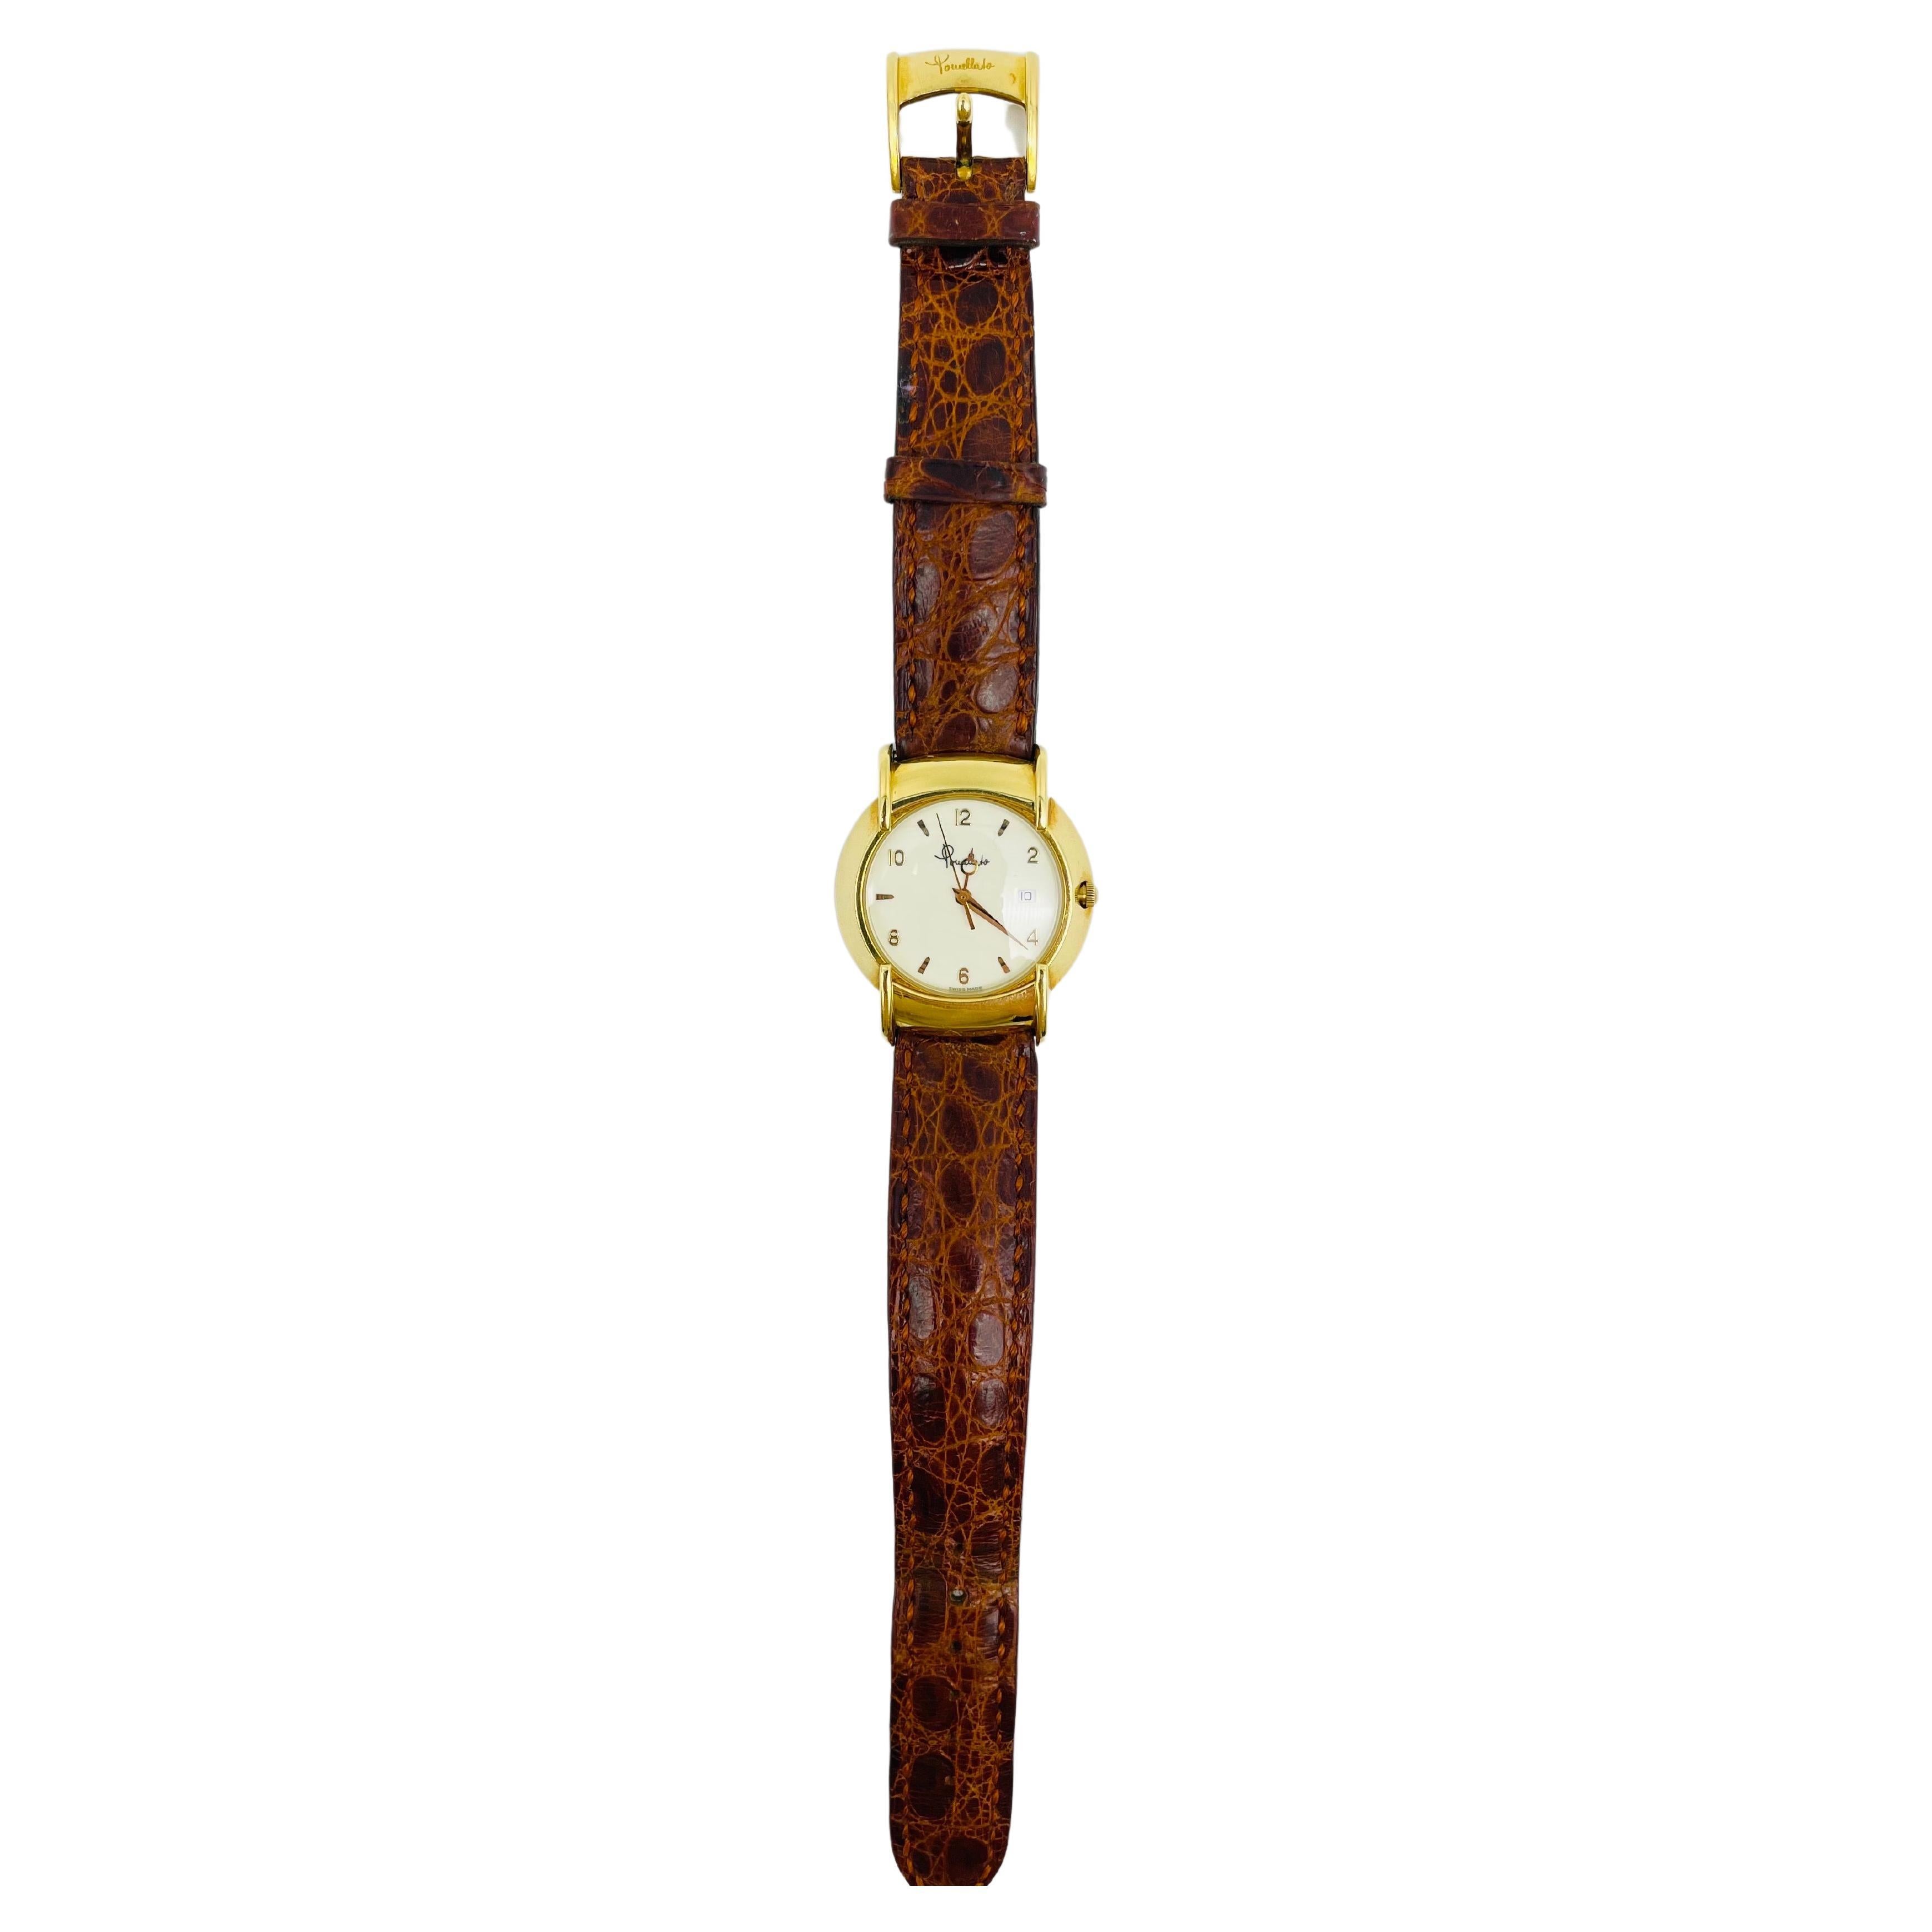 Die exquisite und zeitlose Armbanduhr Pomellato ist ein wahres Meisterwerk an Luxus und Eleganz. Das aus massivem 18-karätigem Gelbgold gefertigte Snapback-Gehäuse besticht durch sein klassisches und zugleich modernes Design und passt mit einem